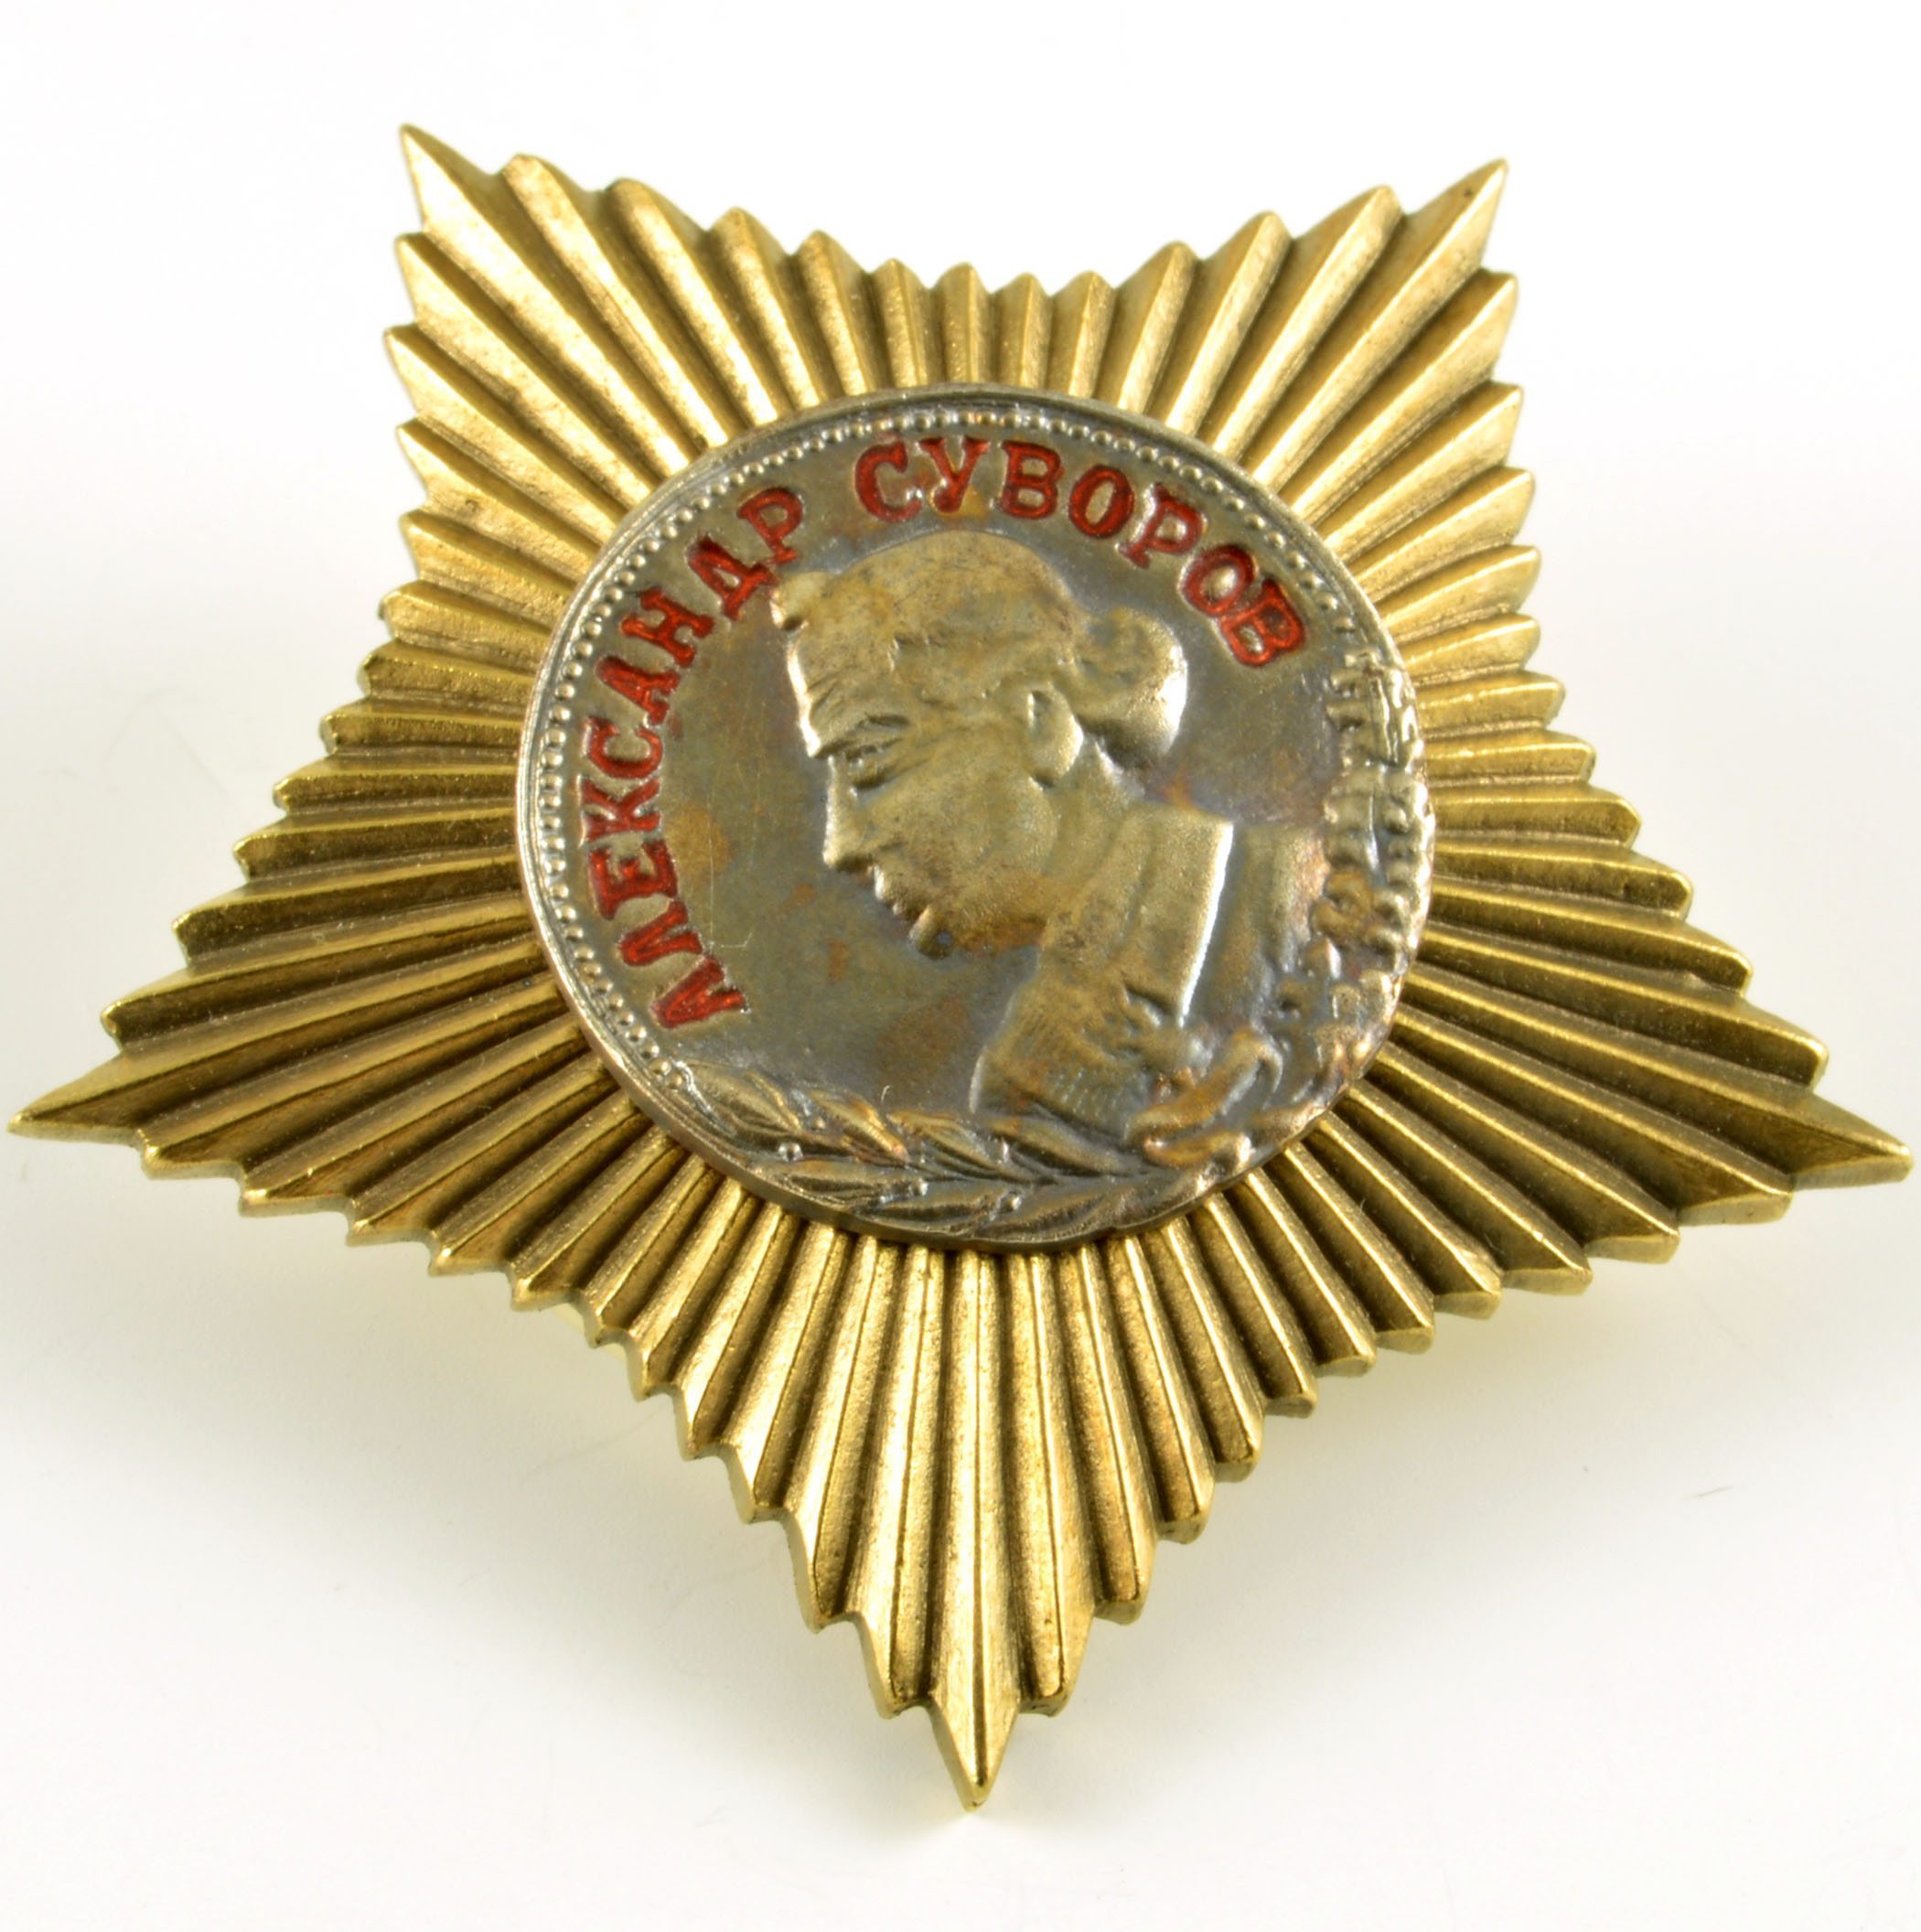 AWARD ORDER MEDAL Order of Suv orov 1 CLASS WW II RED ARMY MILITARY WW2 WW 2 